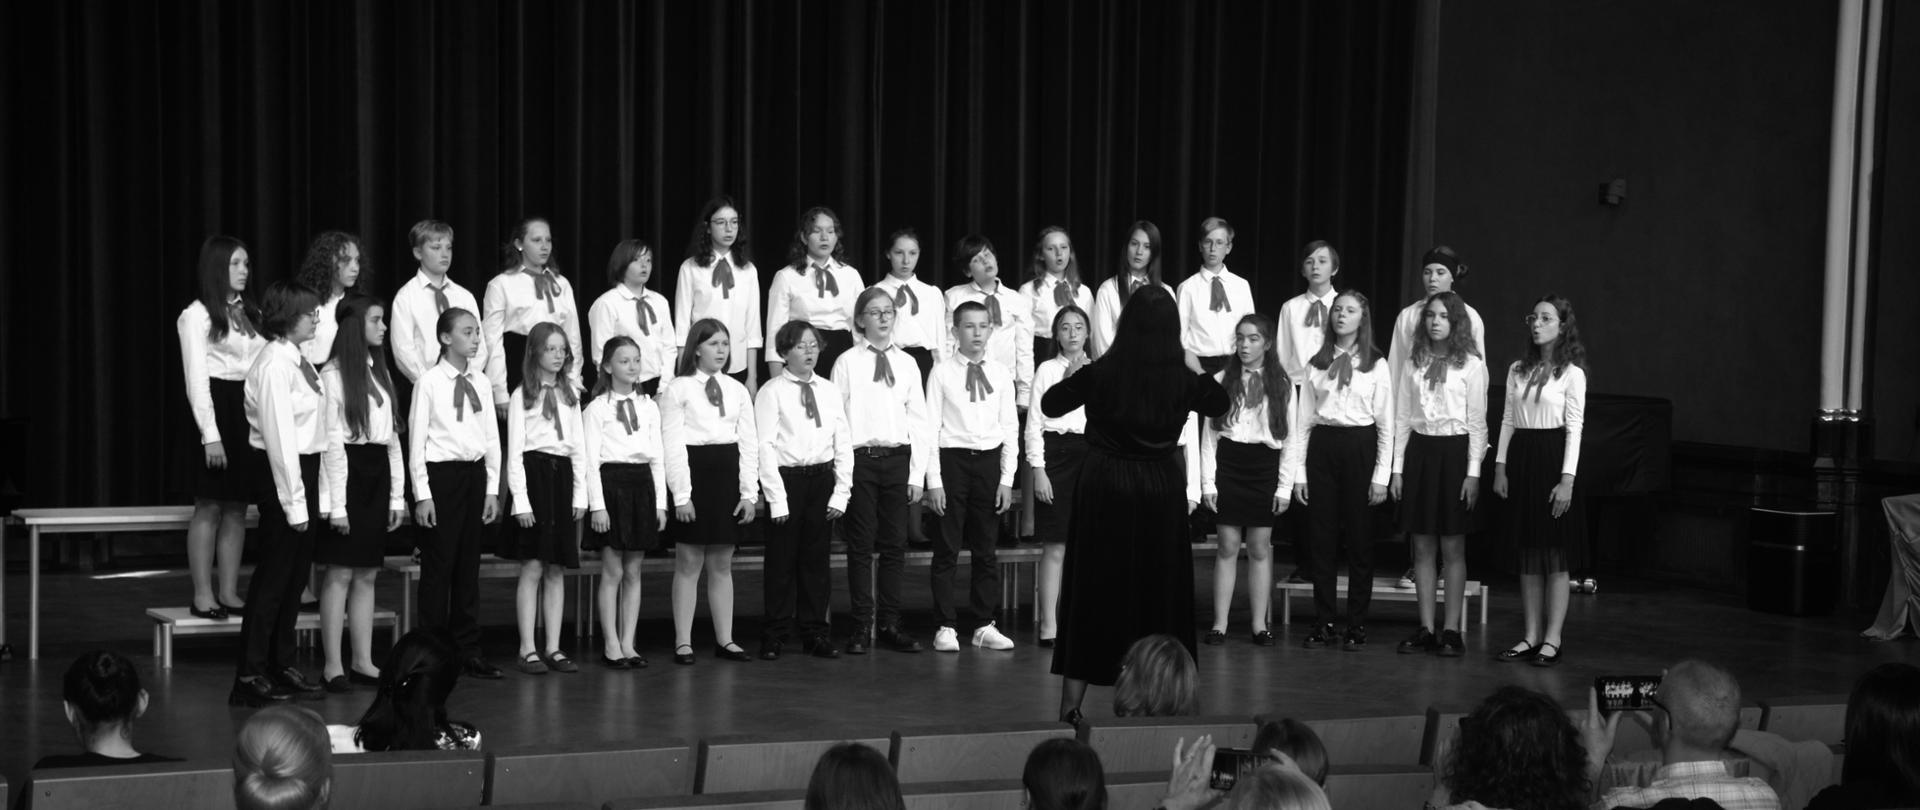 Zdjęcie z koncertu, młodzież (chór) ubrana na biało czarno stojąca frontem do słuchaczy, przed nimi pani dyrygent z podniesionymi rękami stojąca tyłem do słuchaczy